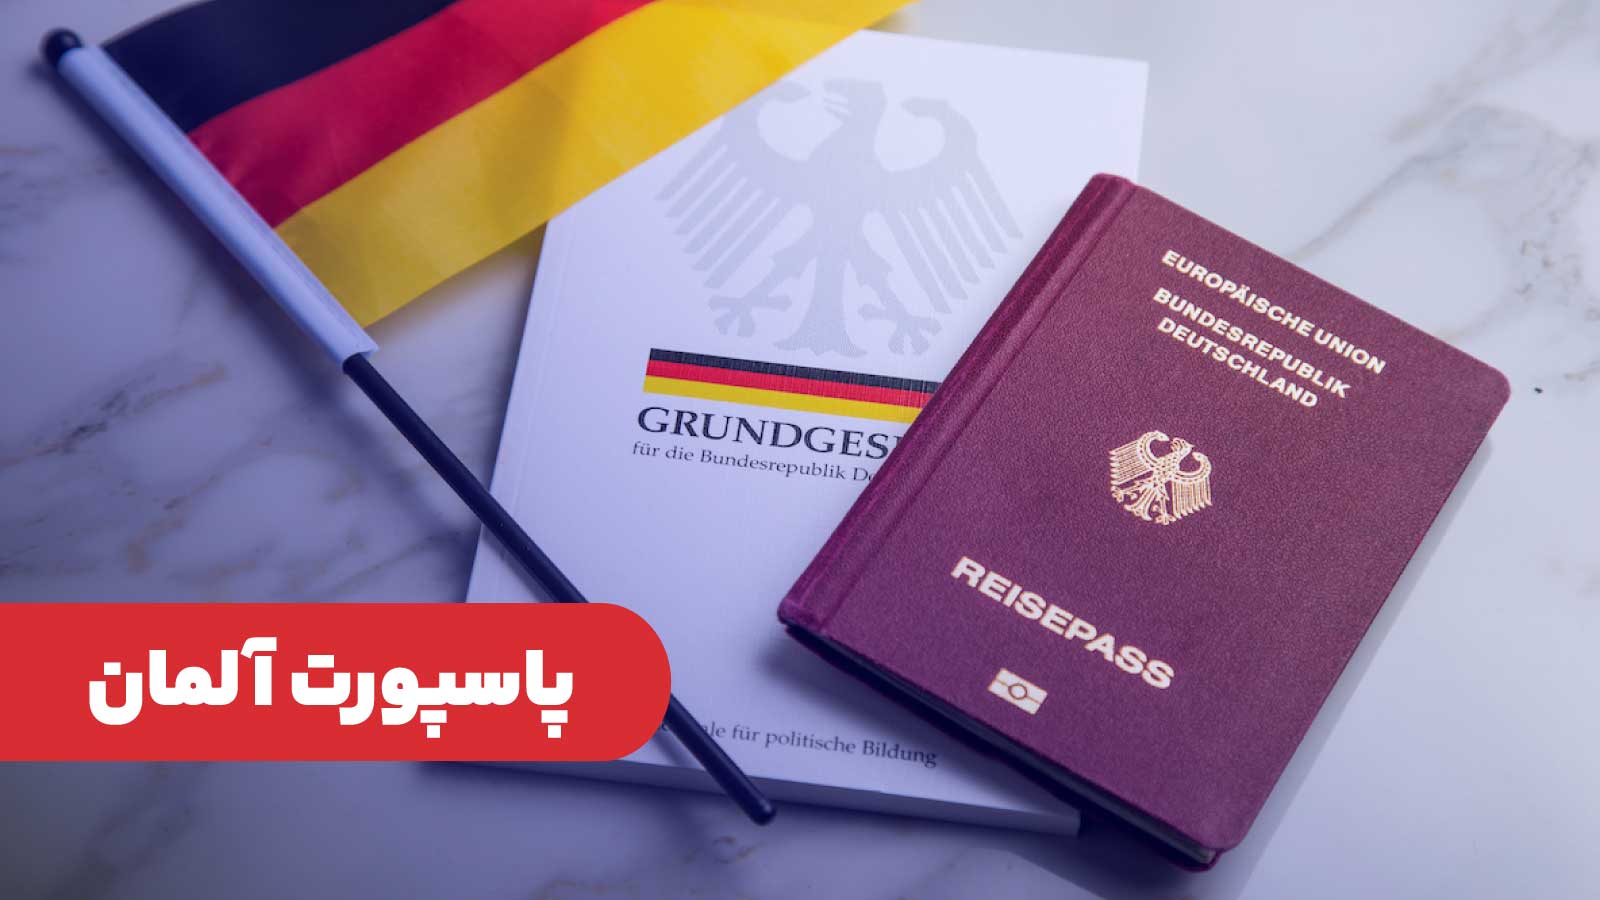 پاسپورت آلمان